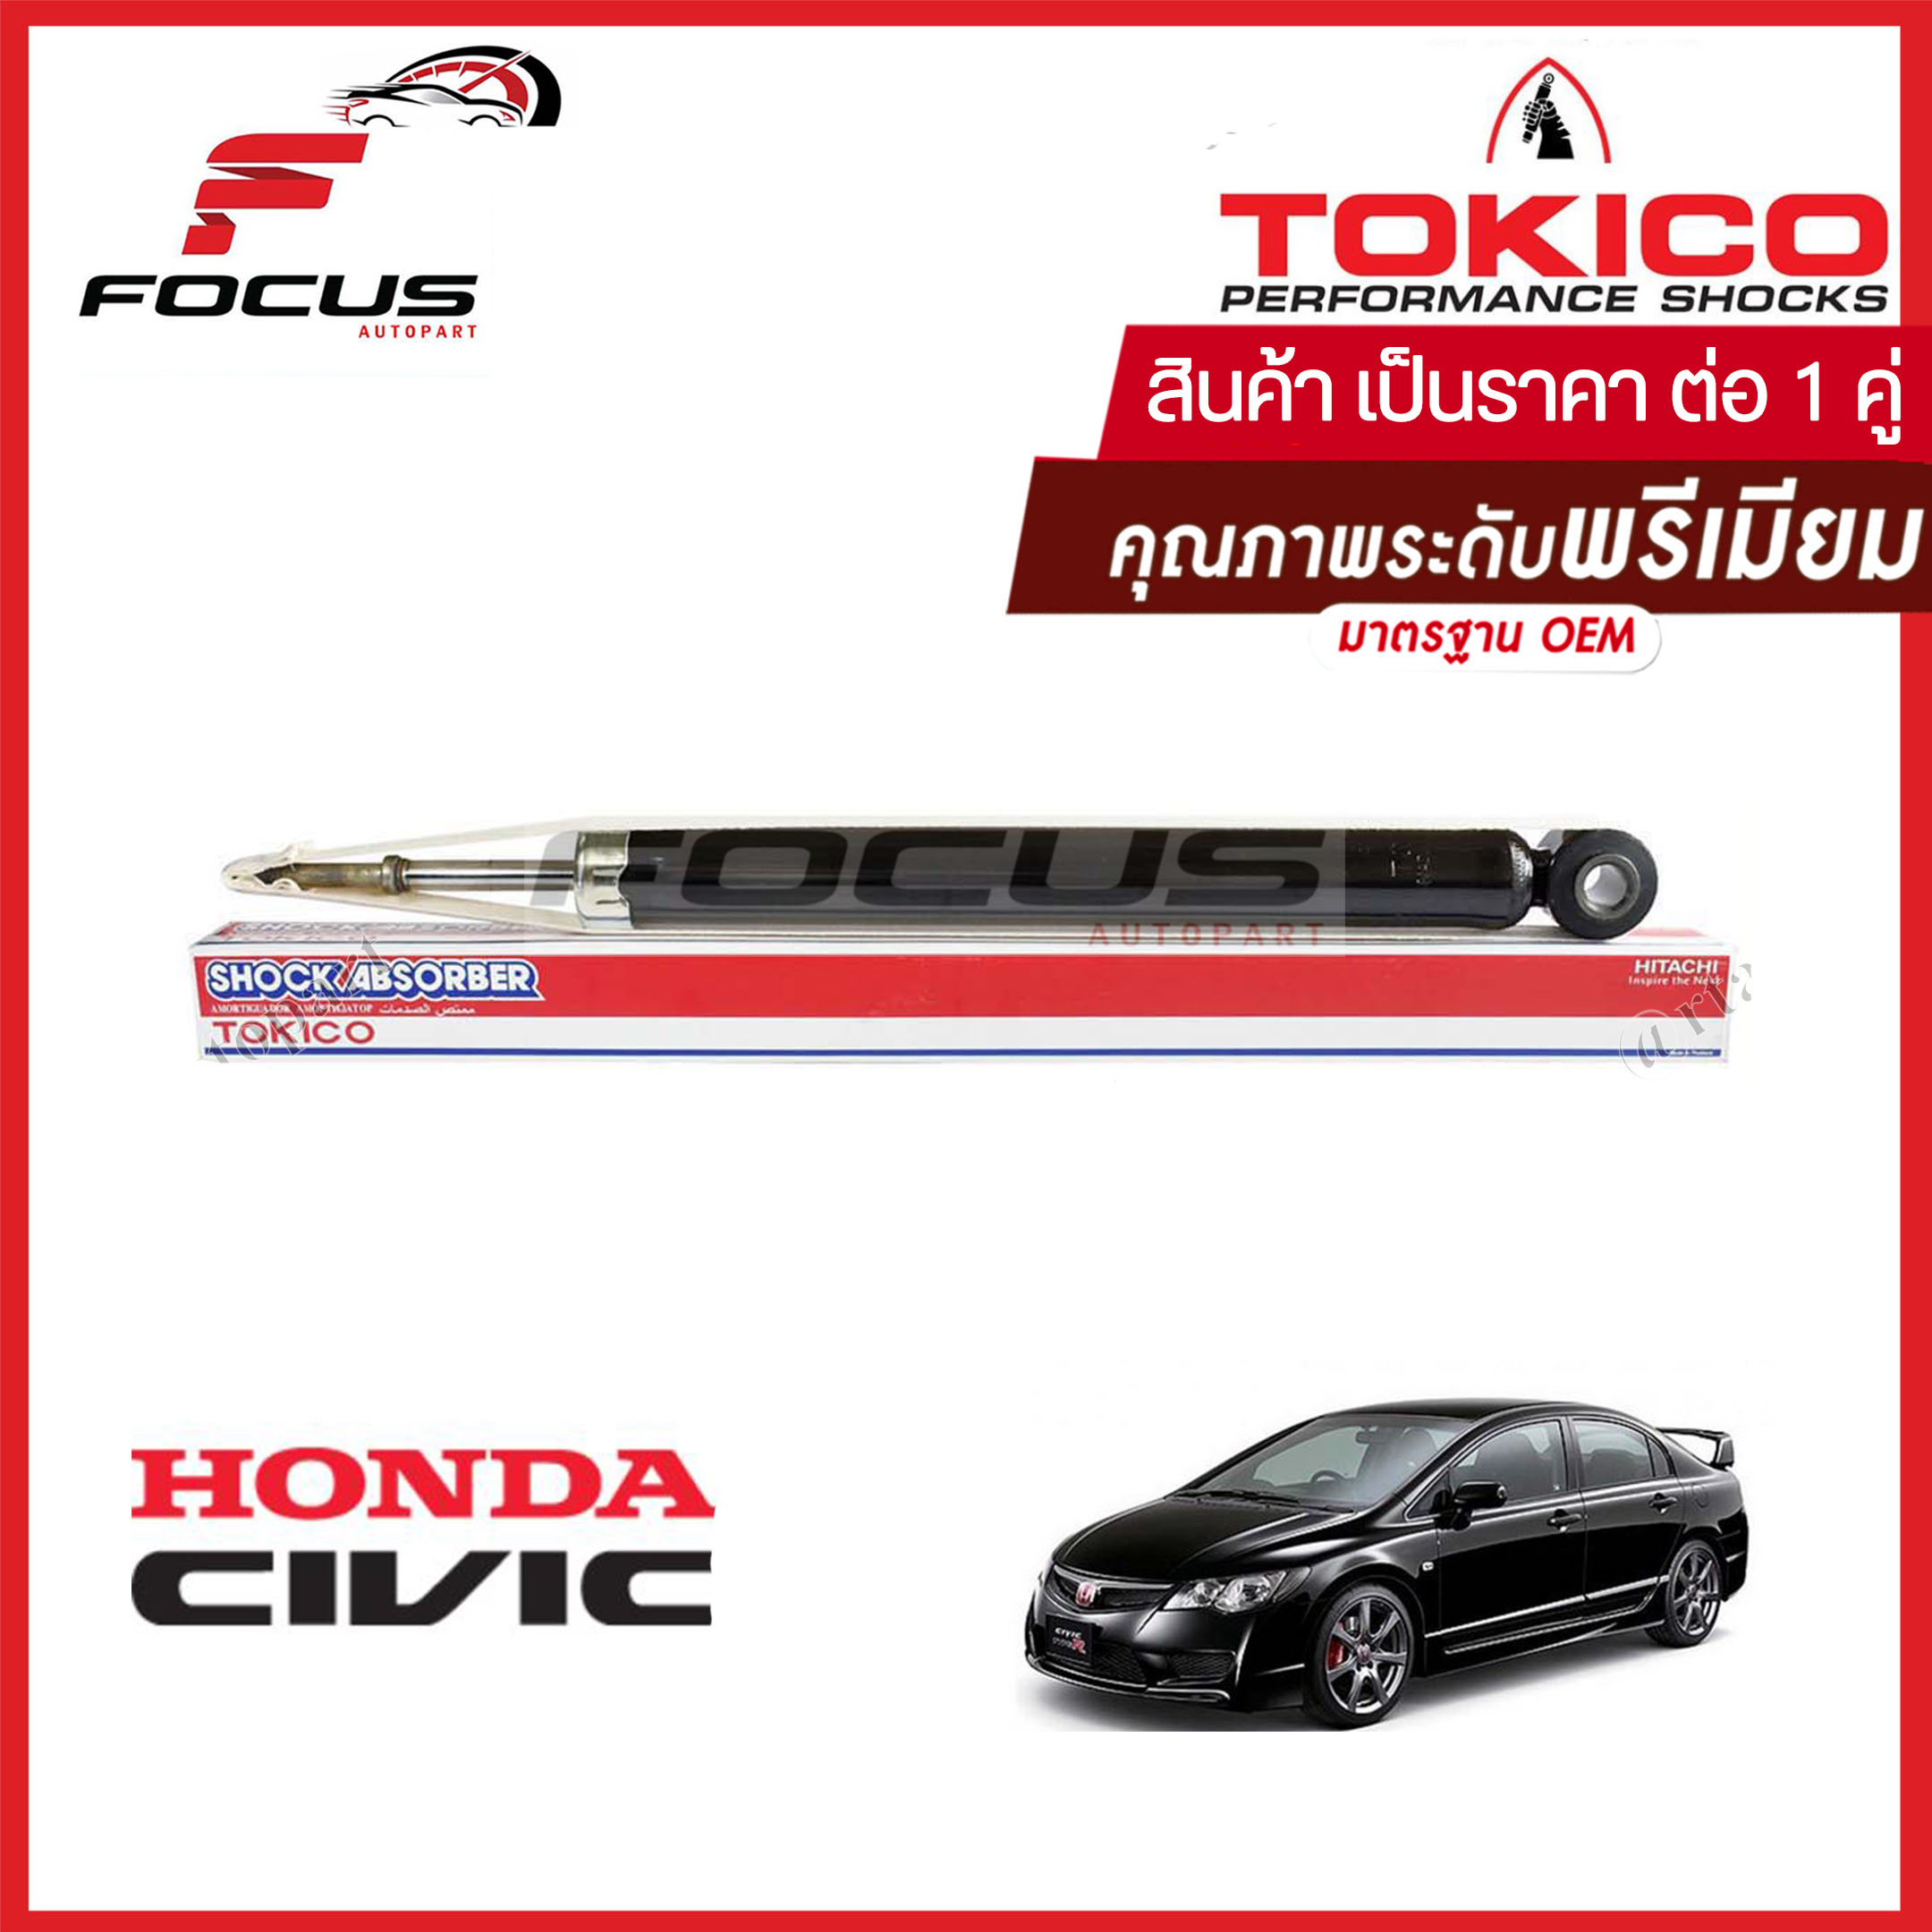 Tokico โช้คอัพหลัง Honda Civic FD ปี06-11 เครื่อง 1.8 2.0 (1คู่) แก็สมาตราฐาน / โช๊คอัพหลัง โช้คหลัง Civic โช๊คหลัง ฮอนด้า ซีวิค06 นางฟ้า โทคิโกะ